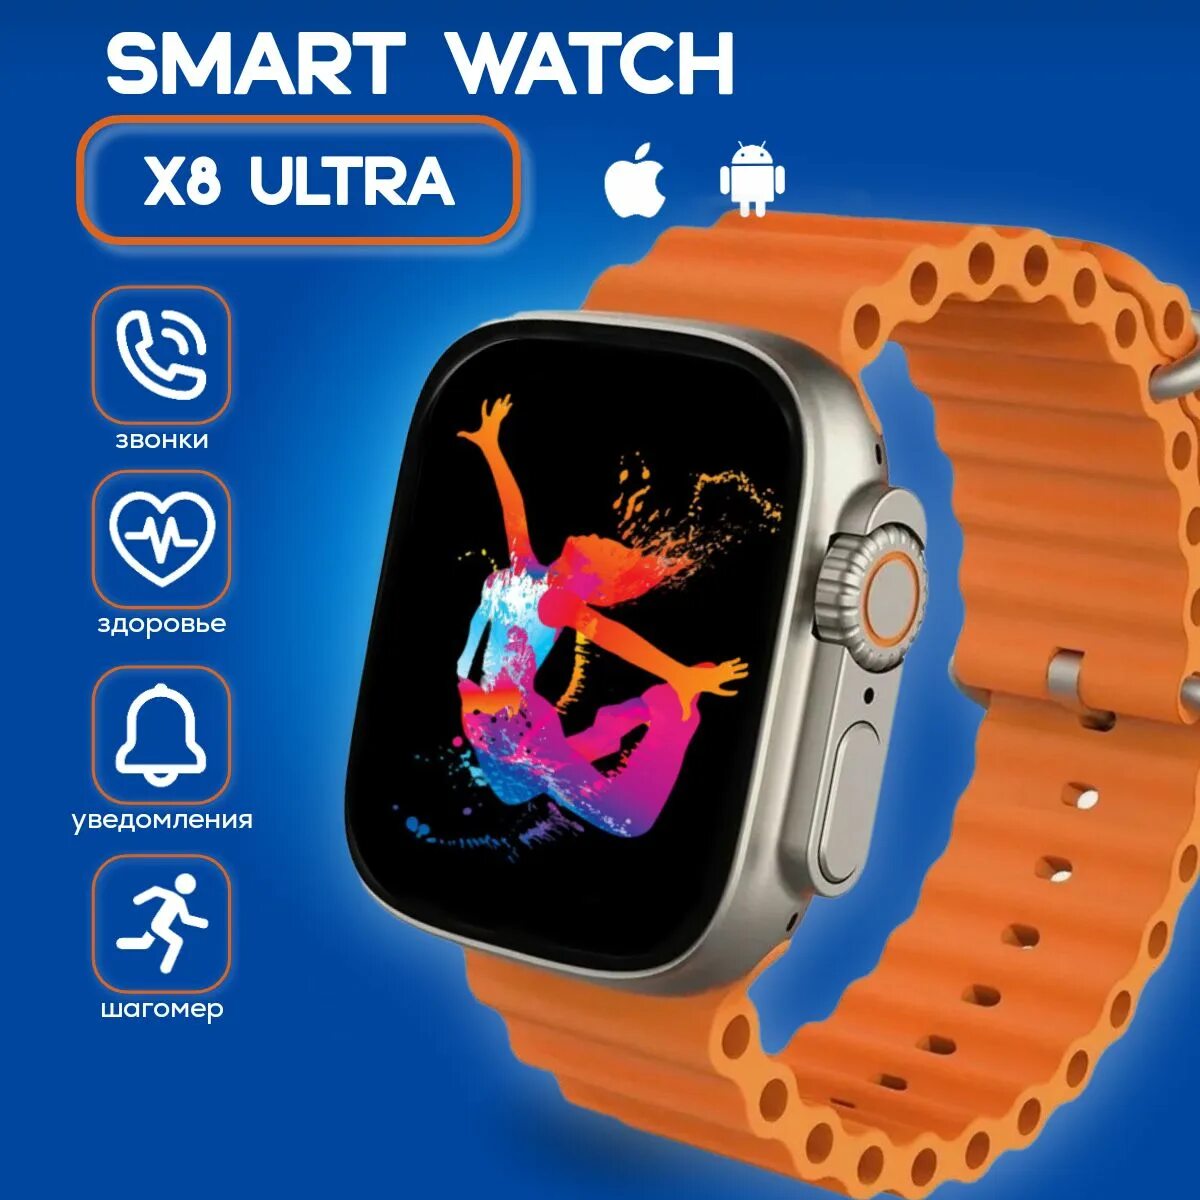 X8 Ultra Smart watch. SMARTWATCH 8 Ultra. Смарт часы x8 Plus Ultra. Умные часы x8 Ultra смарт часы. Watch ultra настроить часы